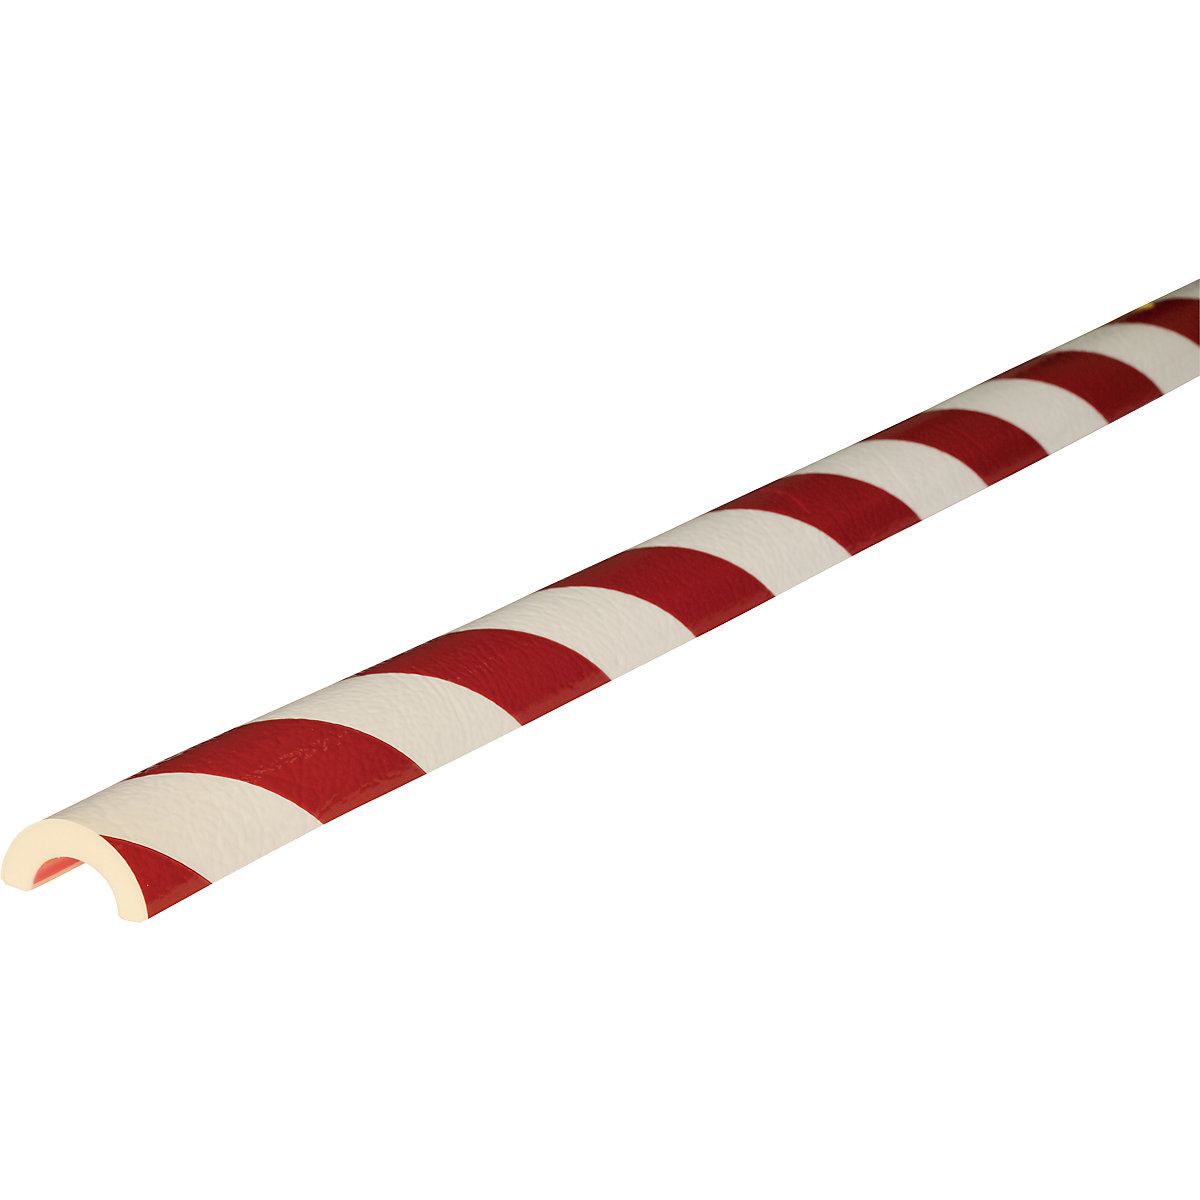 Protection des tuyaux Knuffi® – SHG, type R30, 1 rouleau de 5 m, rouge / blanc-11